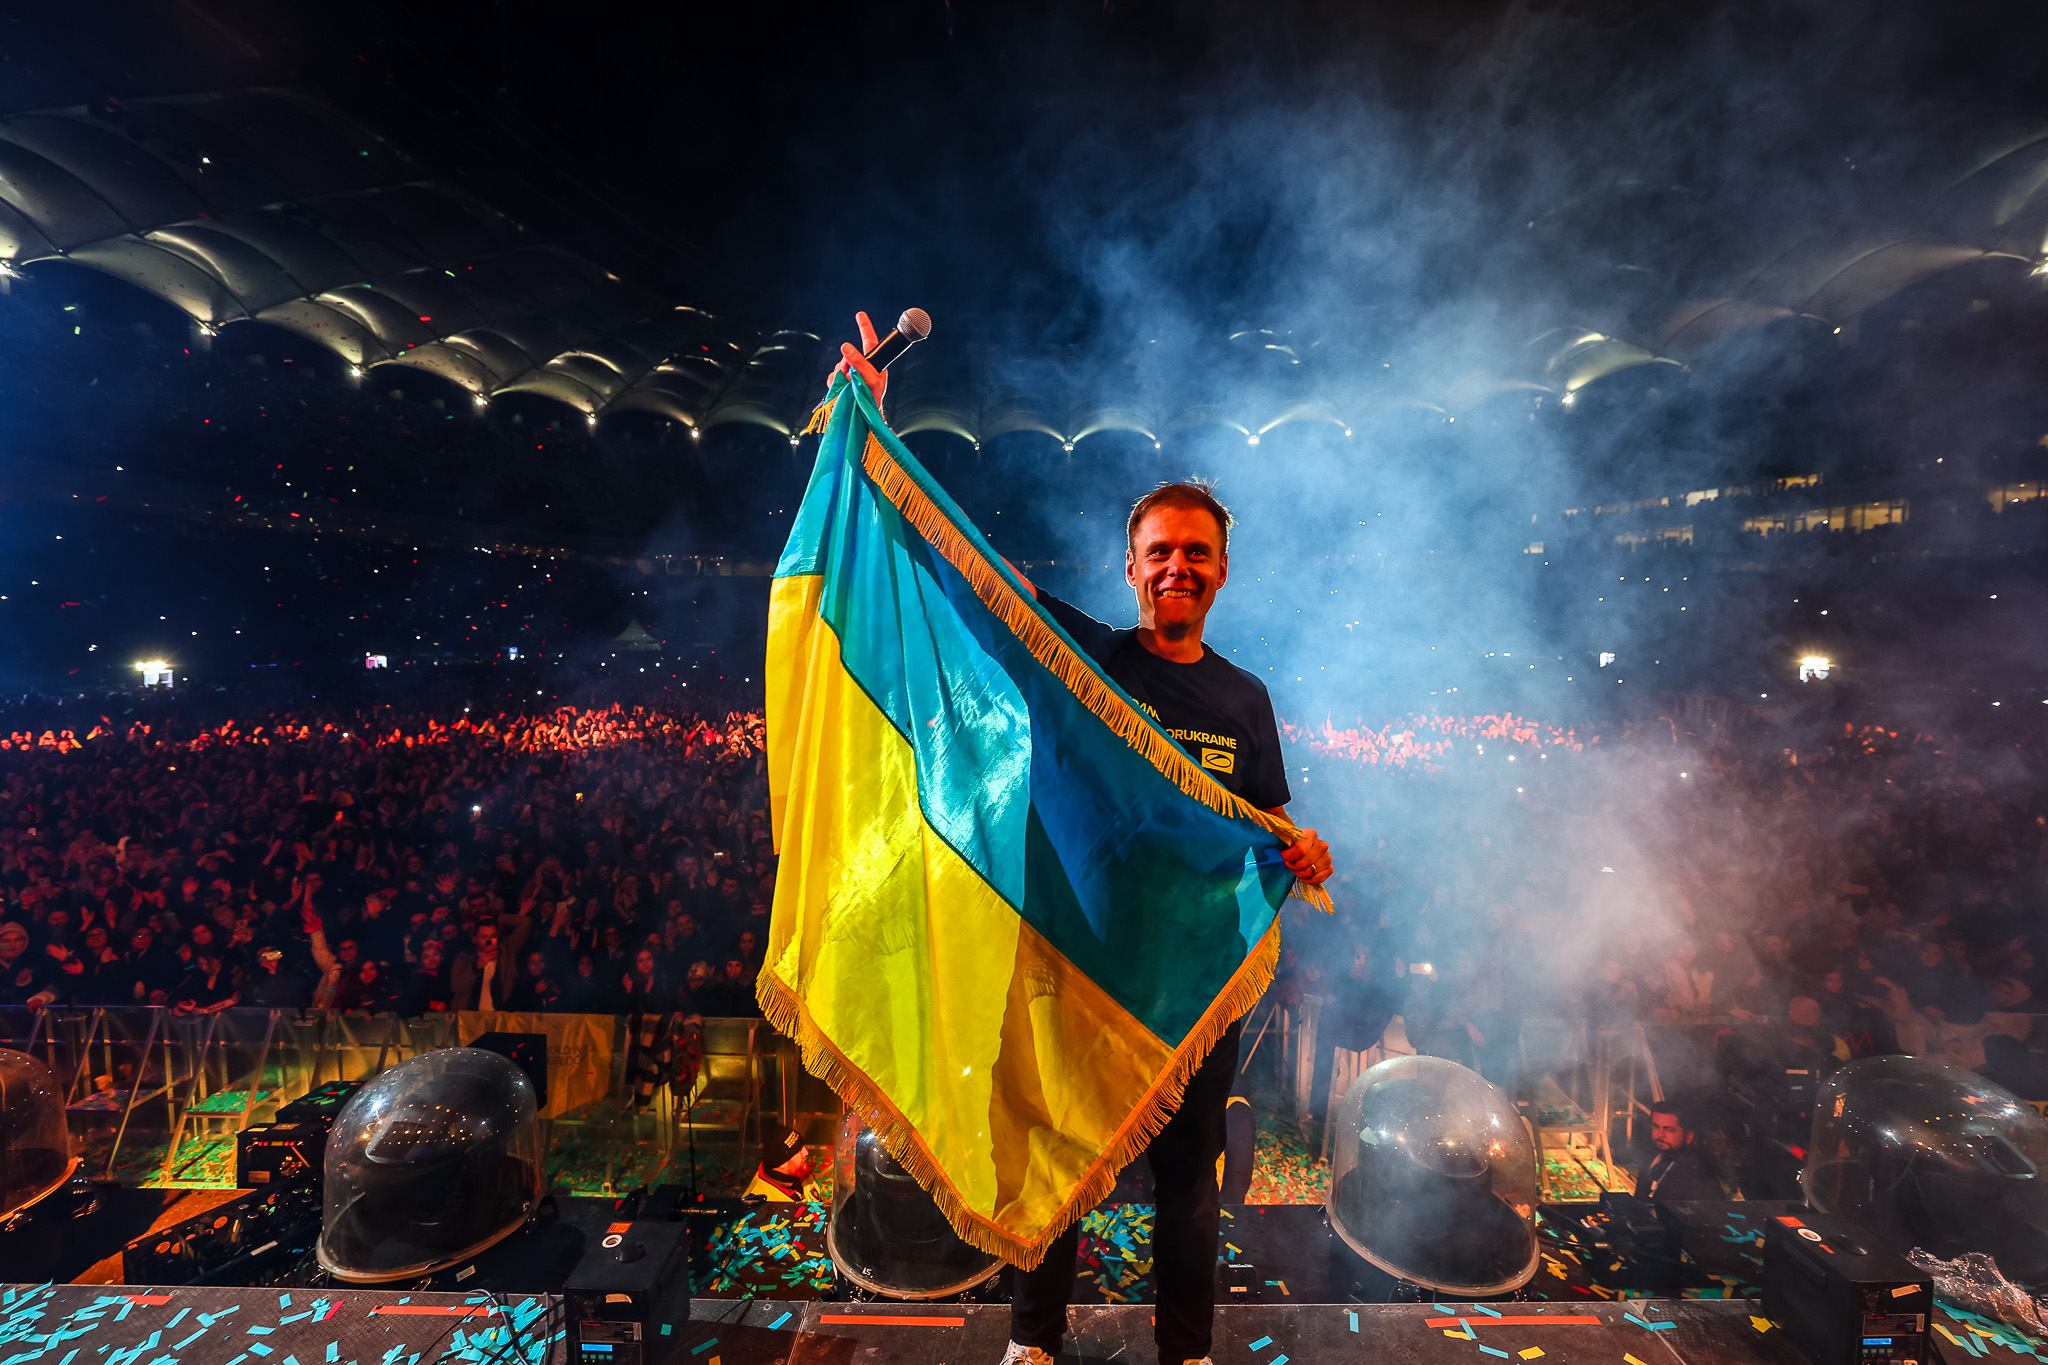 Seară plină de emoții la concertul caritabil WE ARE ONE. 4,5 milioane de lei se vor duce către ucraineni - Imaginea 4